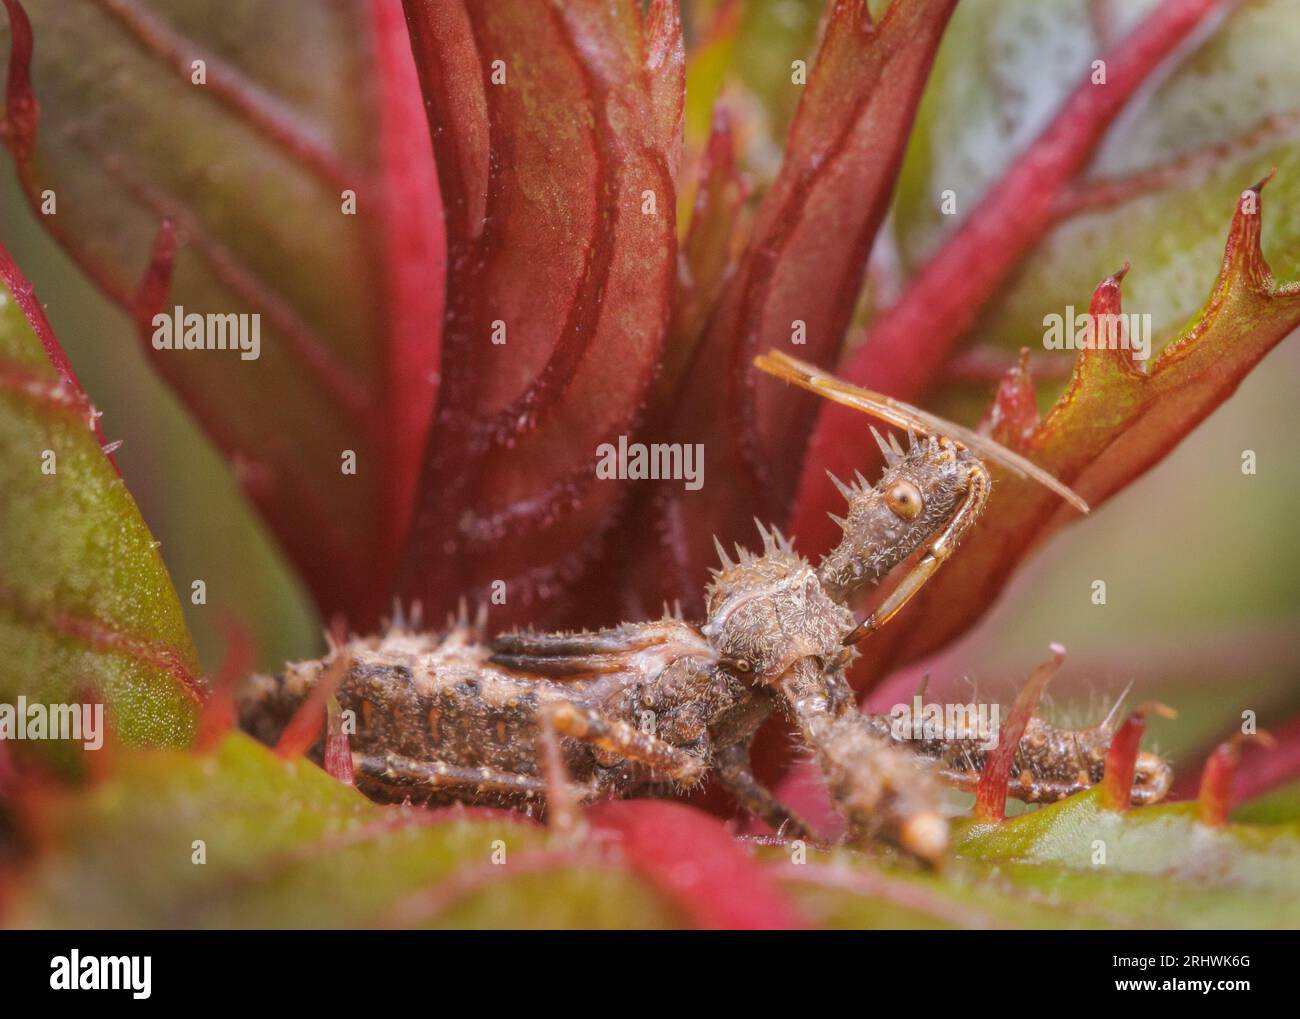 Punaise d'assasin épineux (Sinea spinipes) - Comté de Hall, Géorgie. Une nymphe de punaise d'assasin se trouve à l'intérieur de la grappe de feuilles sur une plante impatiens. Banque D'Images